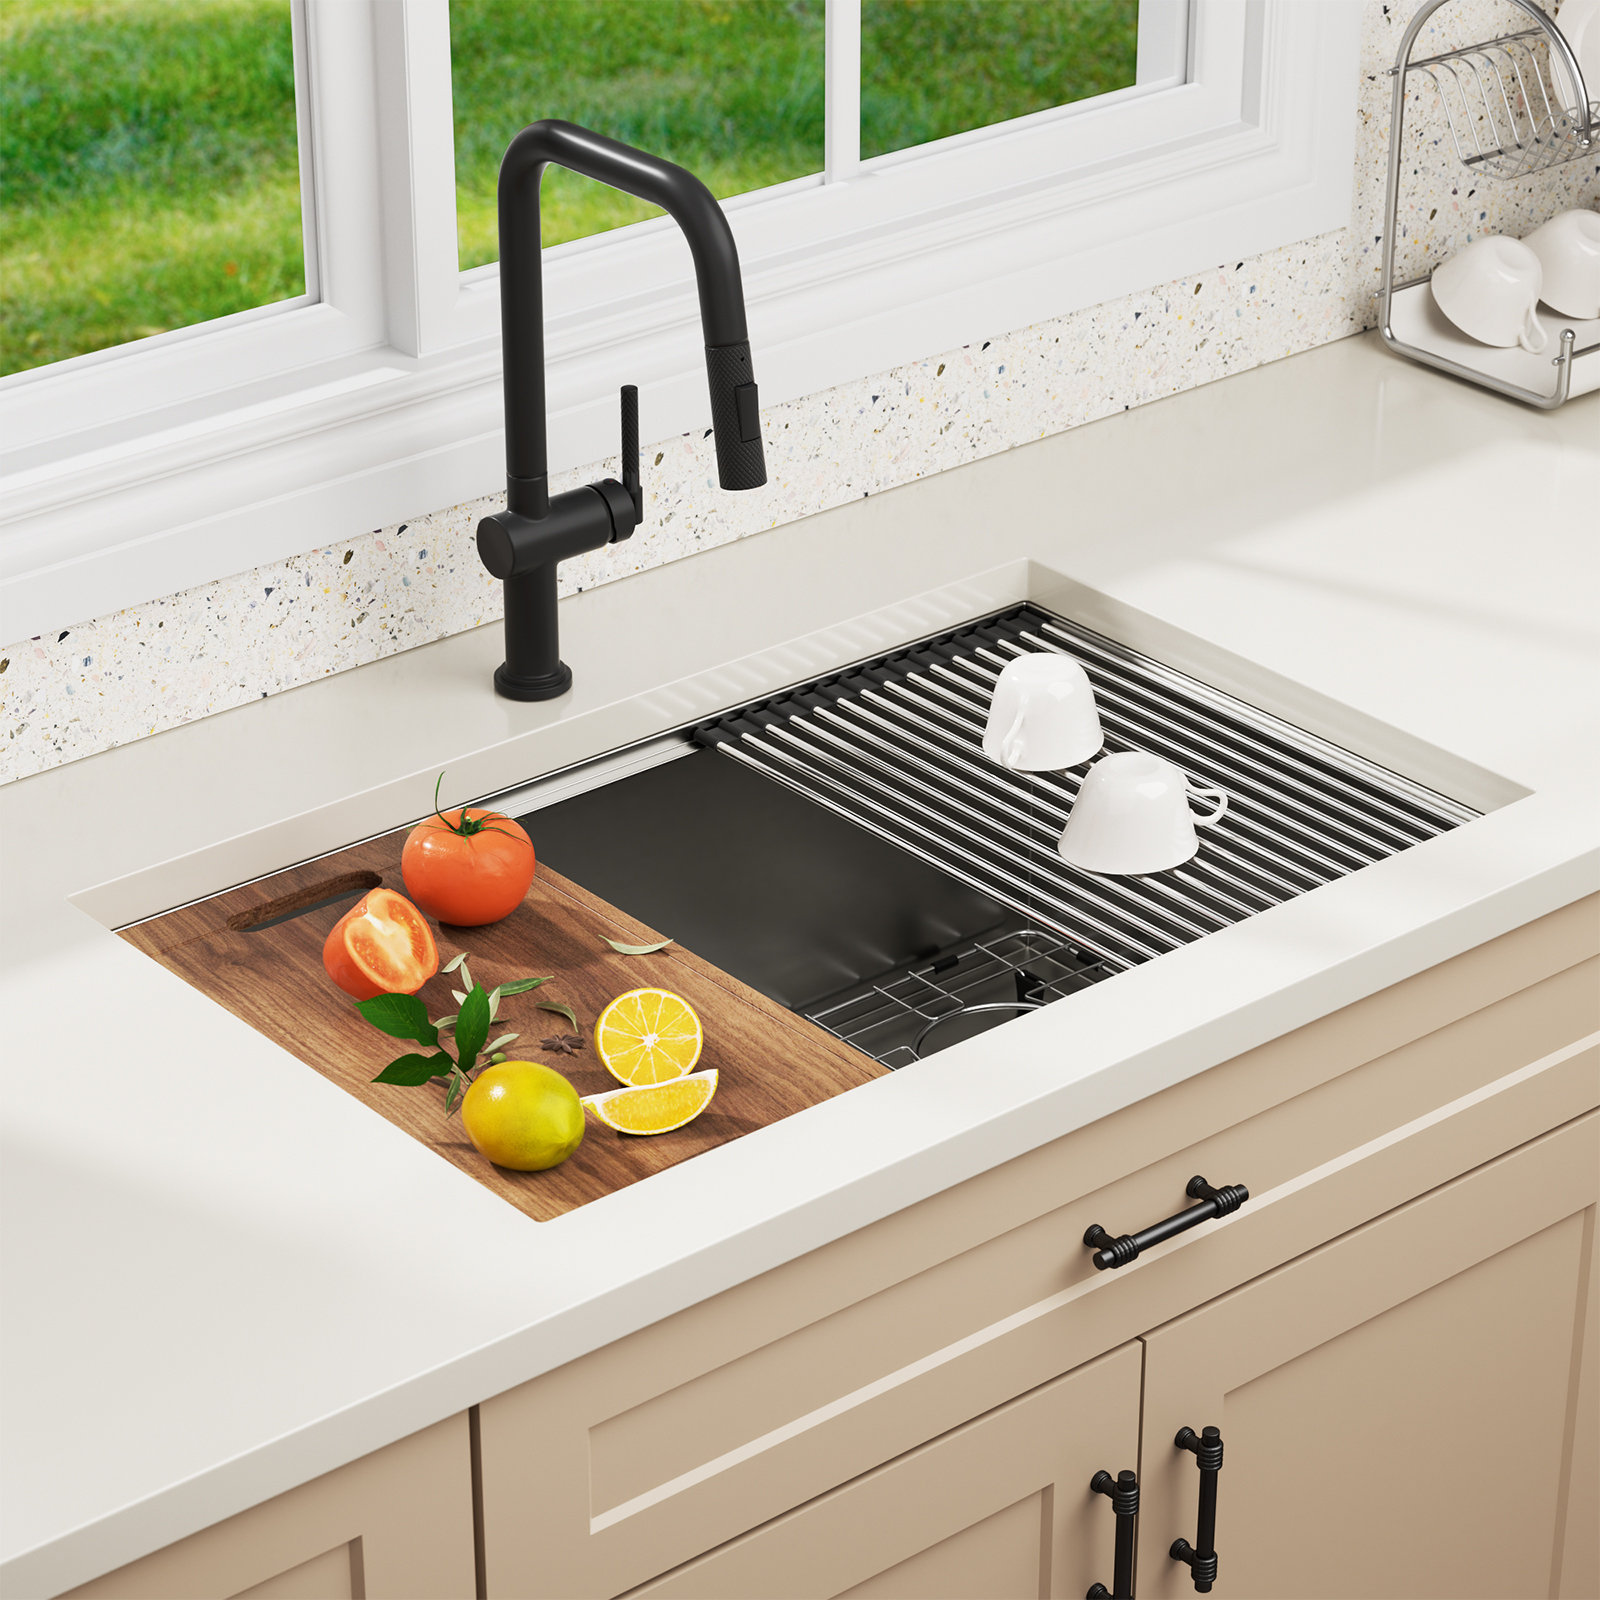 https://assets.wfcdn.com/im/37819156/compr-r85/2475/247578797/undermount-single-bowl-stainless-steel-kitchen-sink.jpg